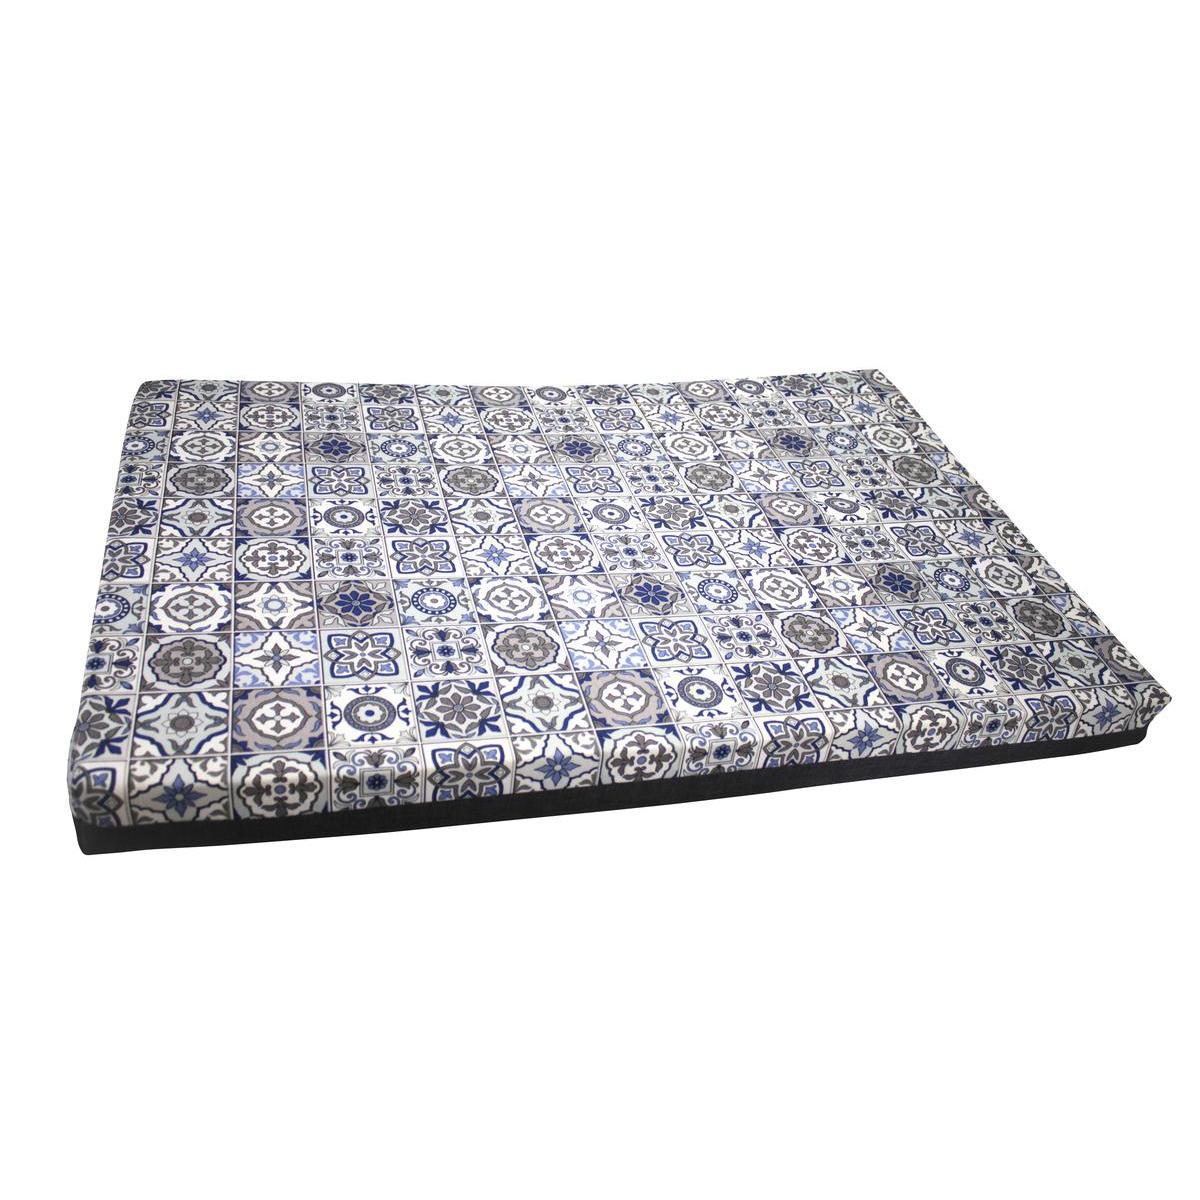 Matelas déhoussable motifs carreaux de ciment - 75 x 115 x 8 cm - Différents modèles - Bleu, gris